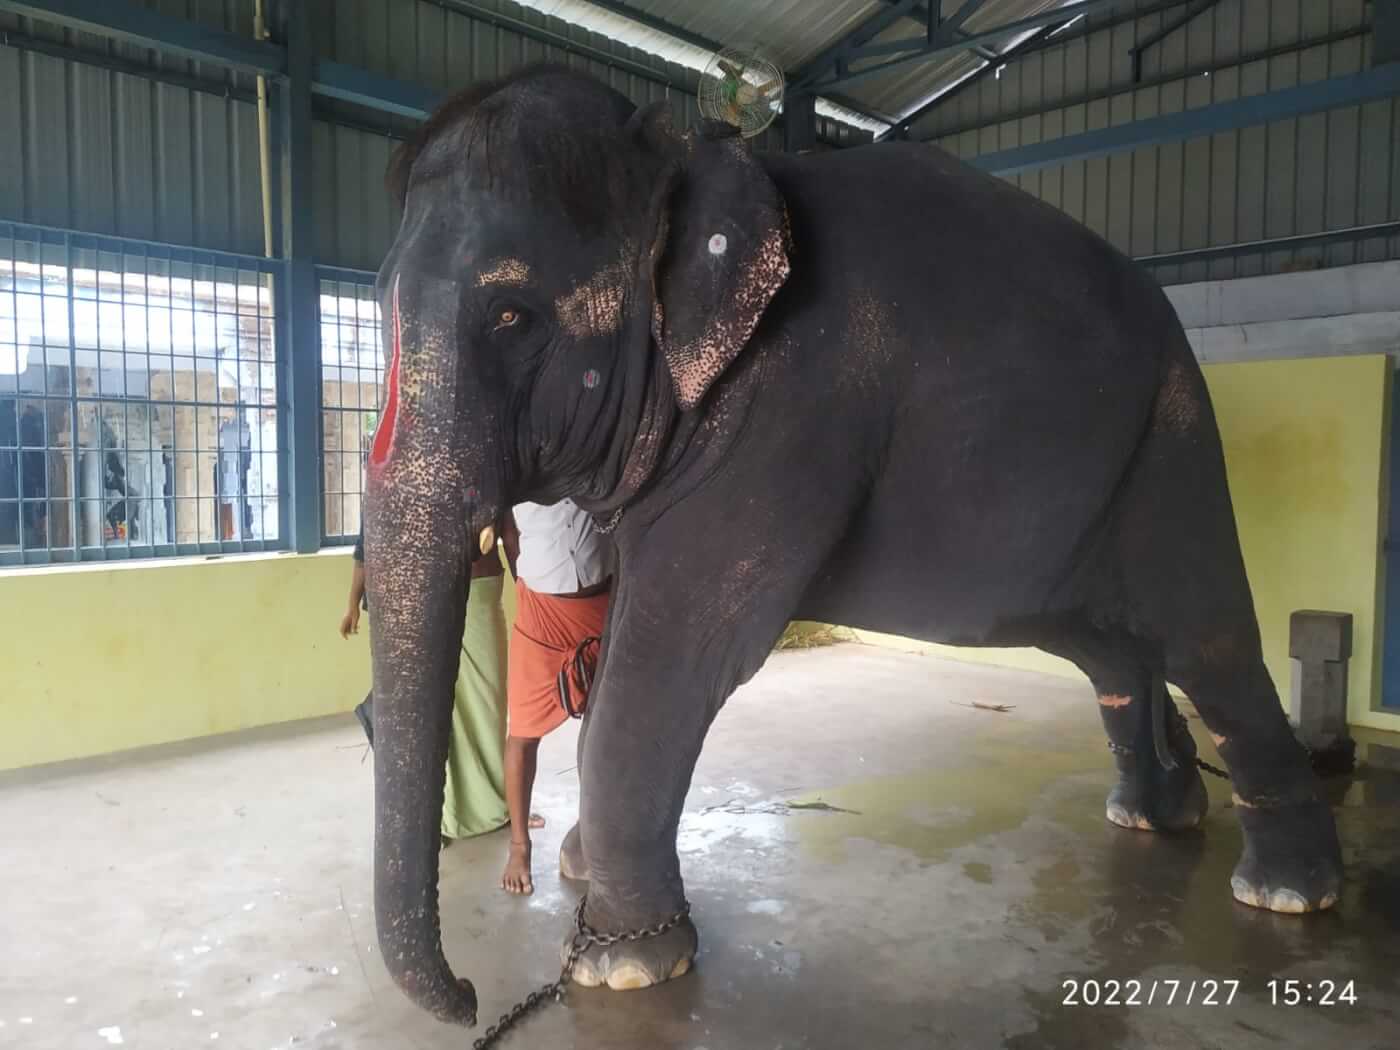 PETA इंडिया और जीव-जन्तु कल्याण बोर्ड के हस्तक्षेप के बाद तमिलनाडु पुलिस और वन विभाग ने हाथियों के साथ की गयी क्रूरता के खिलाफ़ मामला दर्ज़ किया